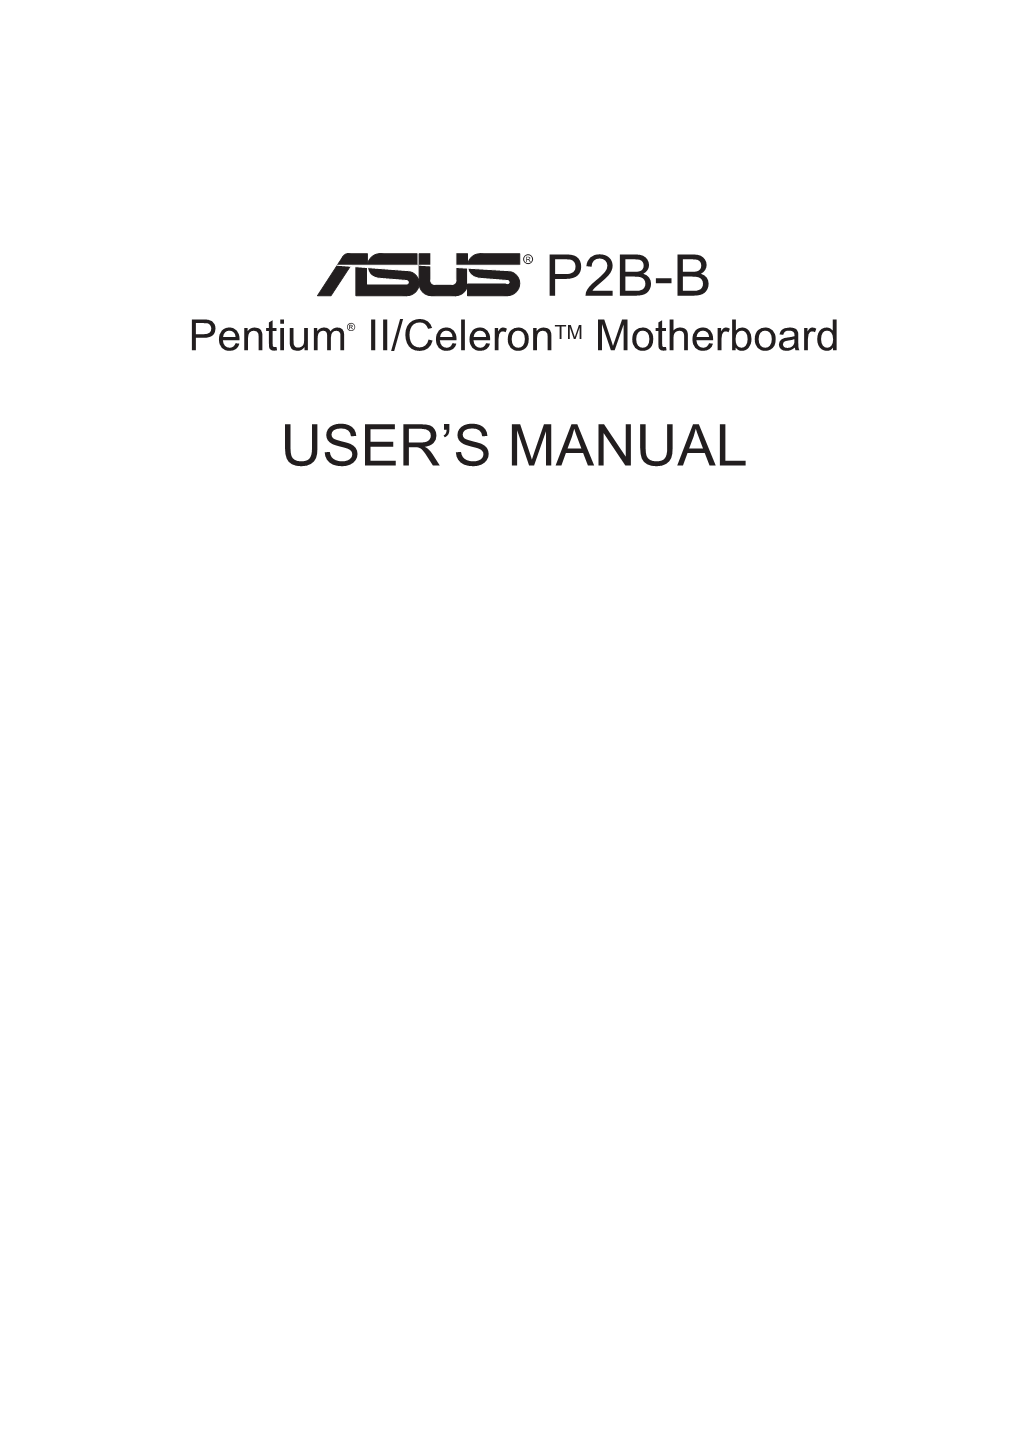 P2b-B User's Manual